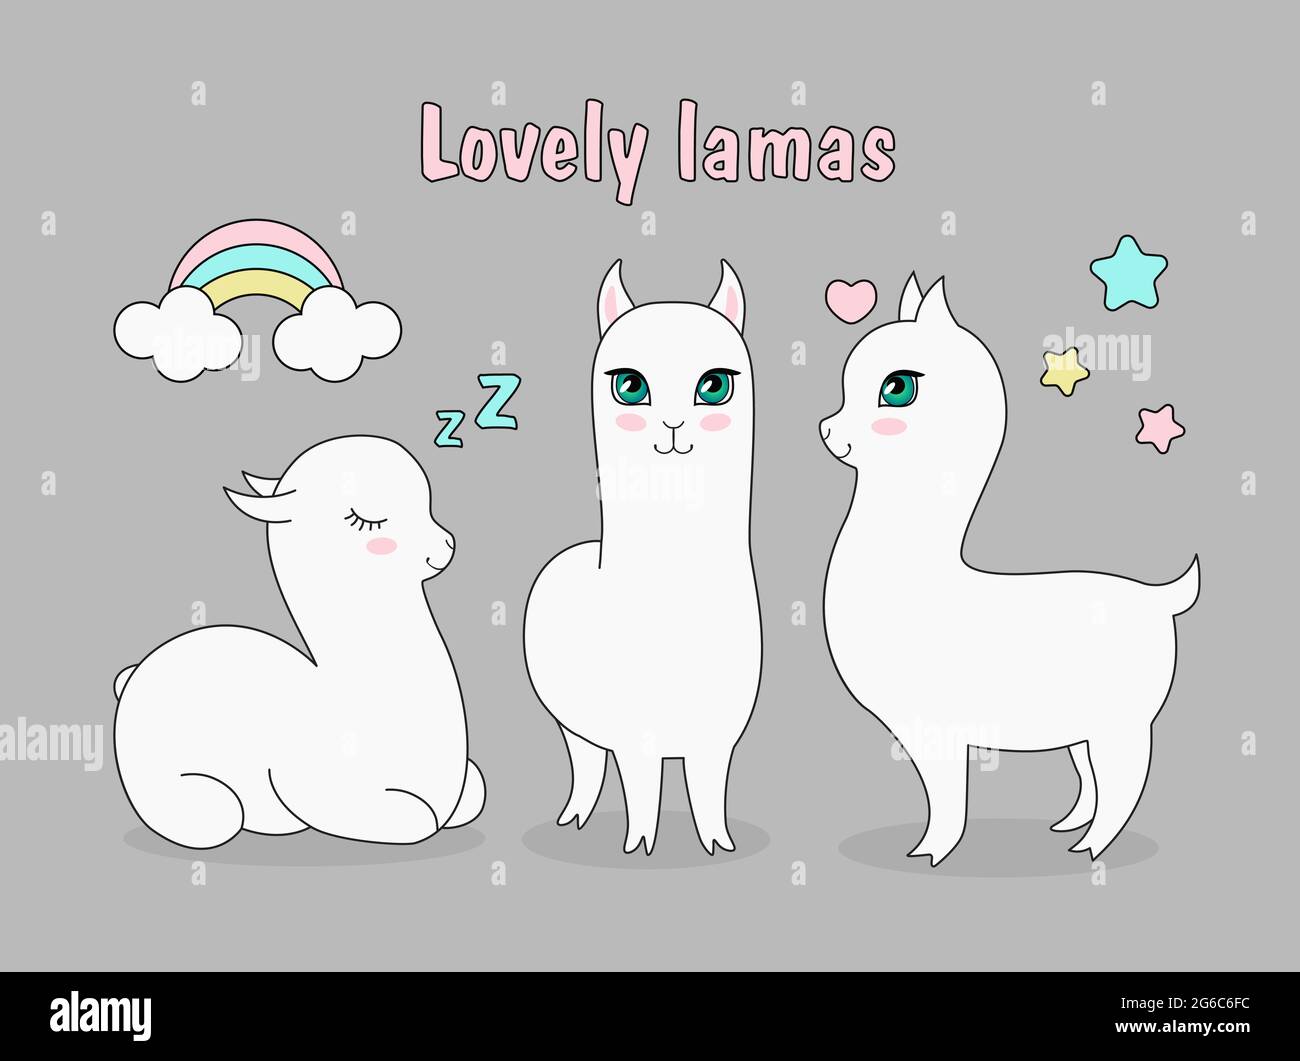 Vektor-Illustration Set von schönen niedlichen Lama Alpaka. Happy lama, verliebt, schlafende Alpaka mit Sternen und Regenbogen im Cartoon-Stil. Stock Vektor